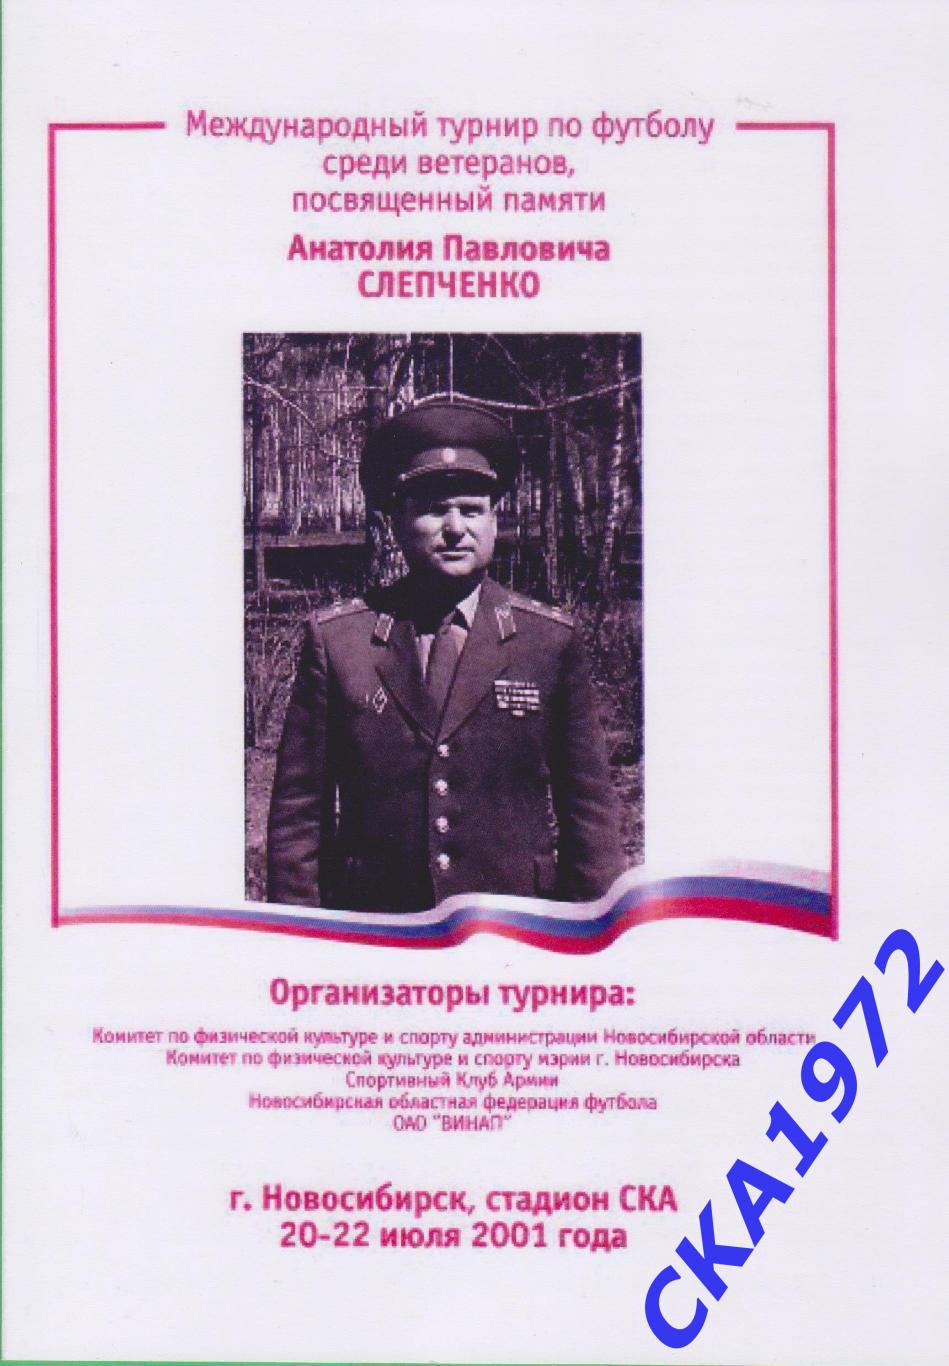 Турнир среди ветеранов памяти Анатолия Павловича Слепченко Новосибирск 2001